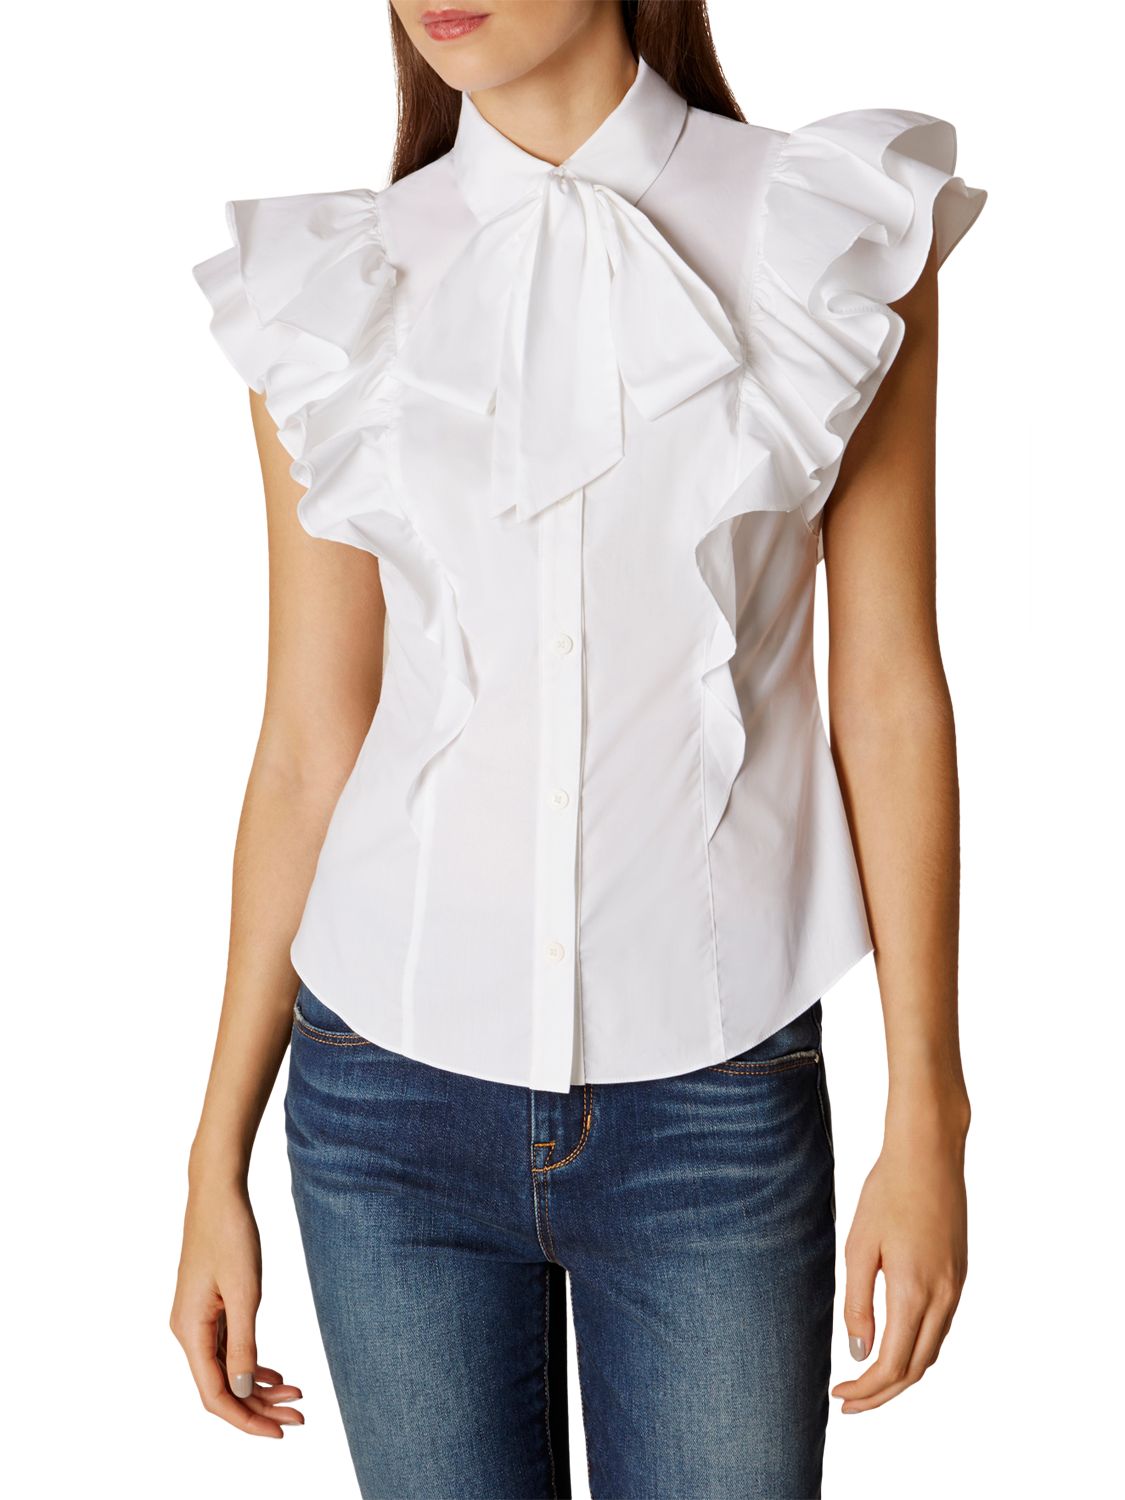 Karen Millen Super Frill Cotton Shirt, White